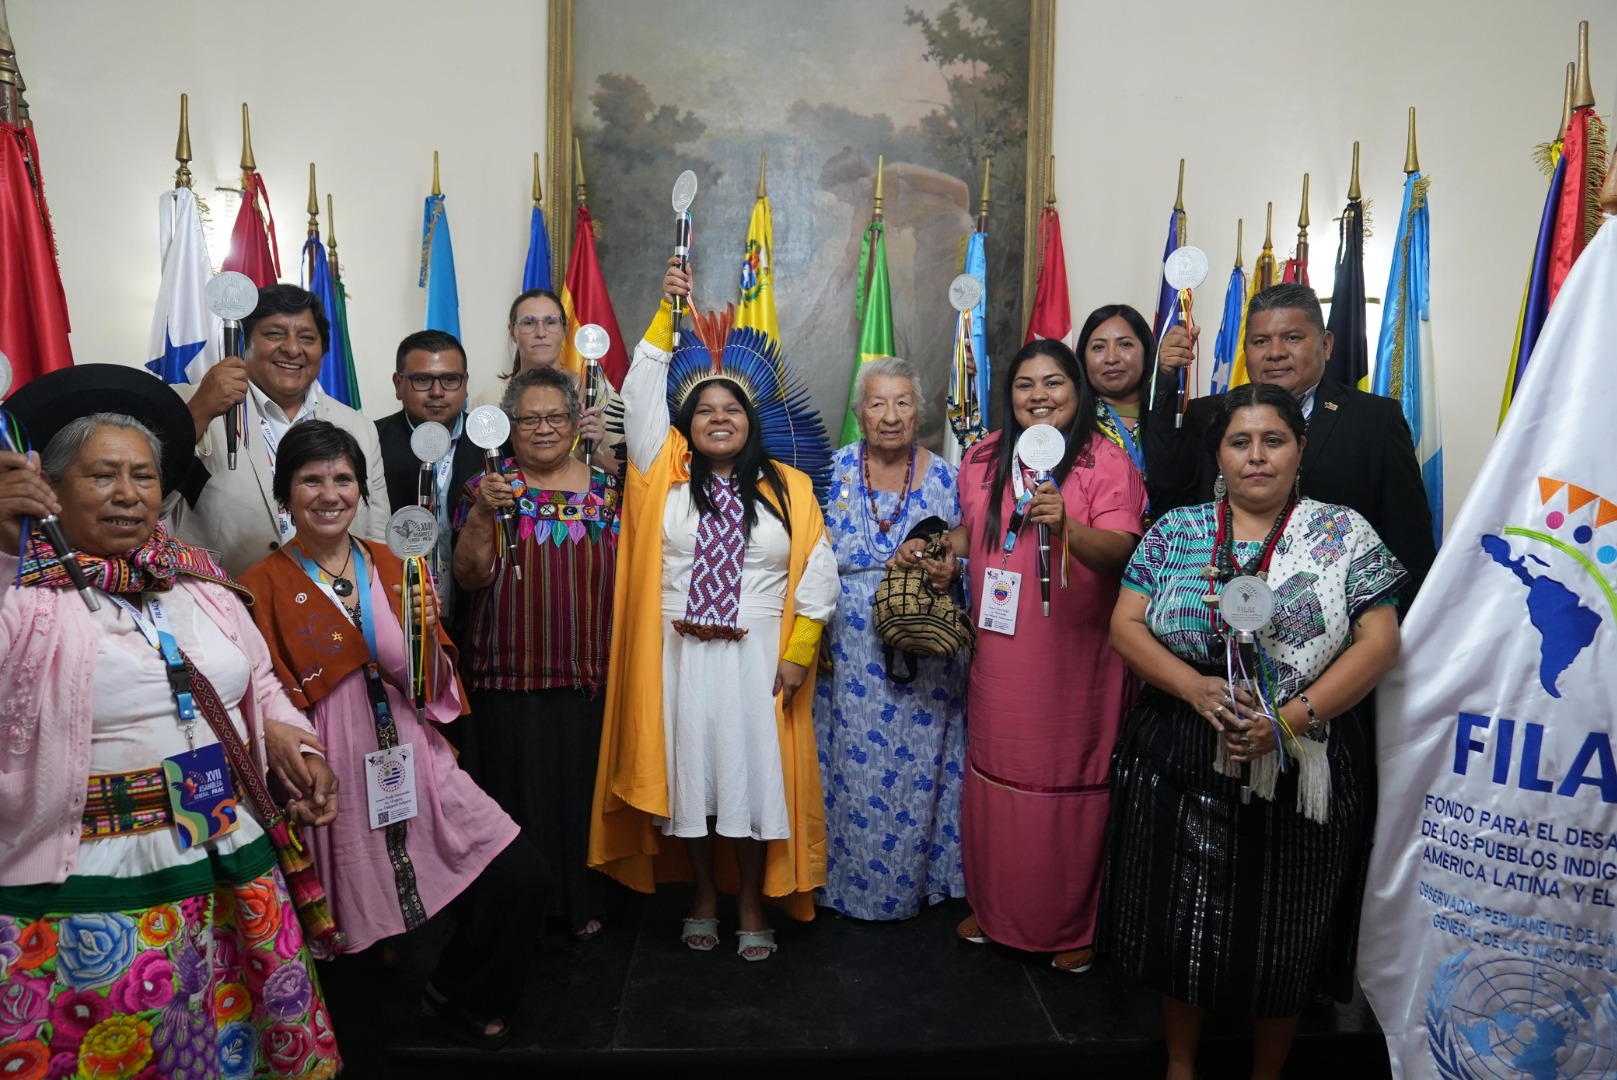 O Brasil assume pela 1ª vez a presidência do FILAC em 32 anos. Sonia Guajajara, Ministra dos Povos Indígenas, foi eleita presidenta na XVII Assembleia Geral em Caracas.